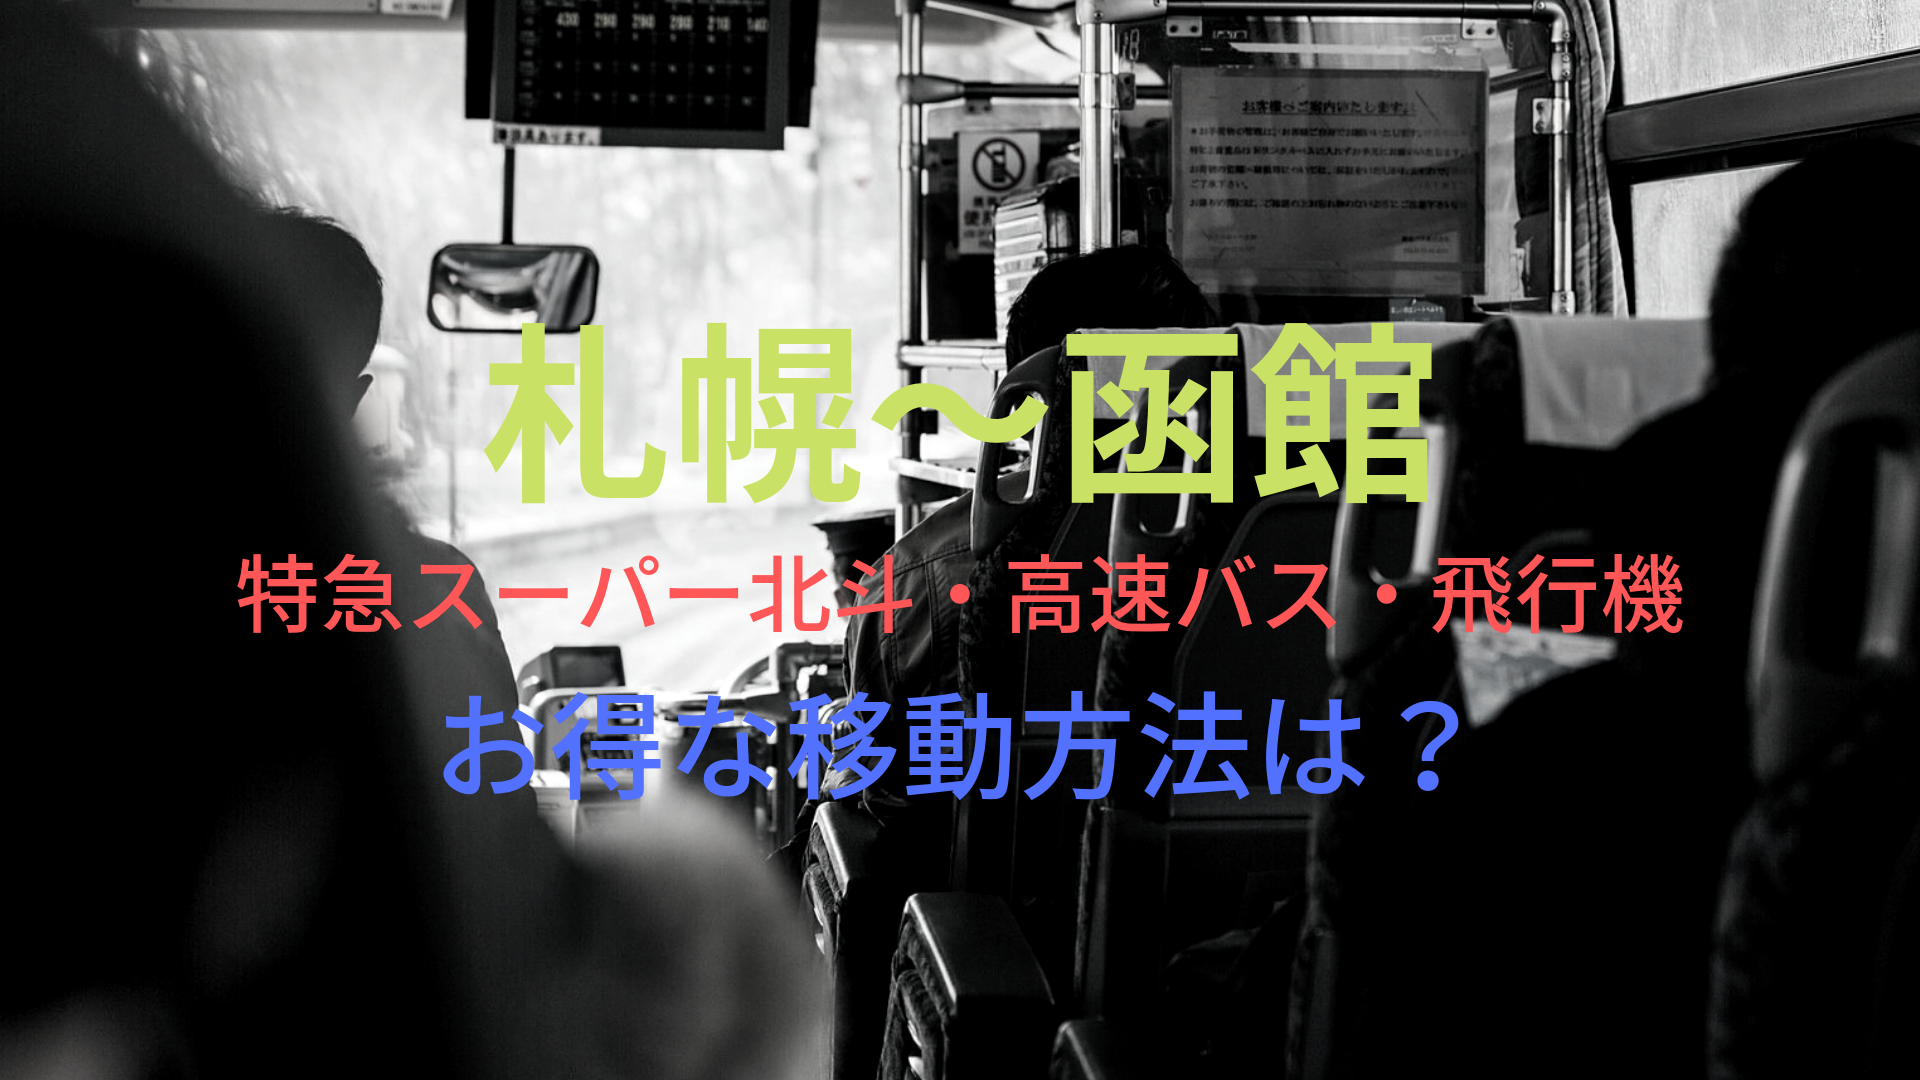 札幌 函館 4050円 格安で移動する方法は 特急スーパー北斗 高速バス 飛行機をそれぞれ比較 ばしたく交通